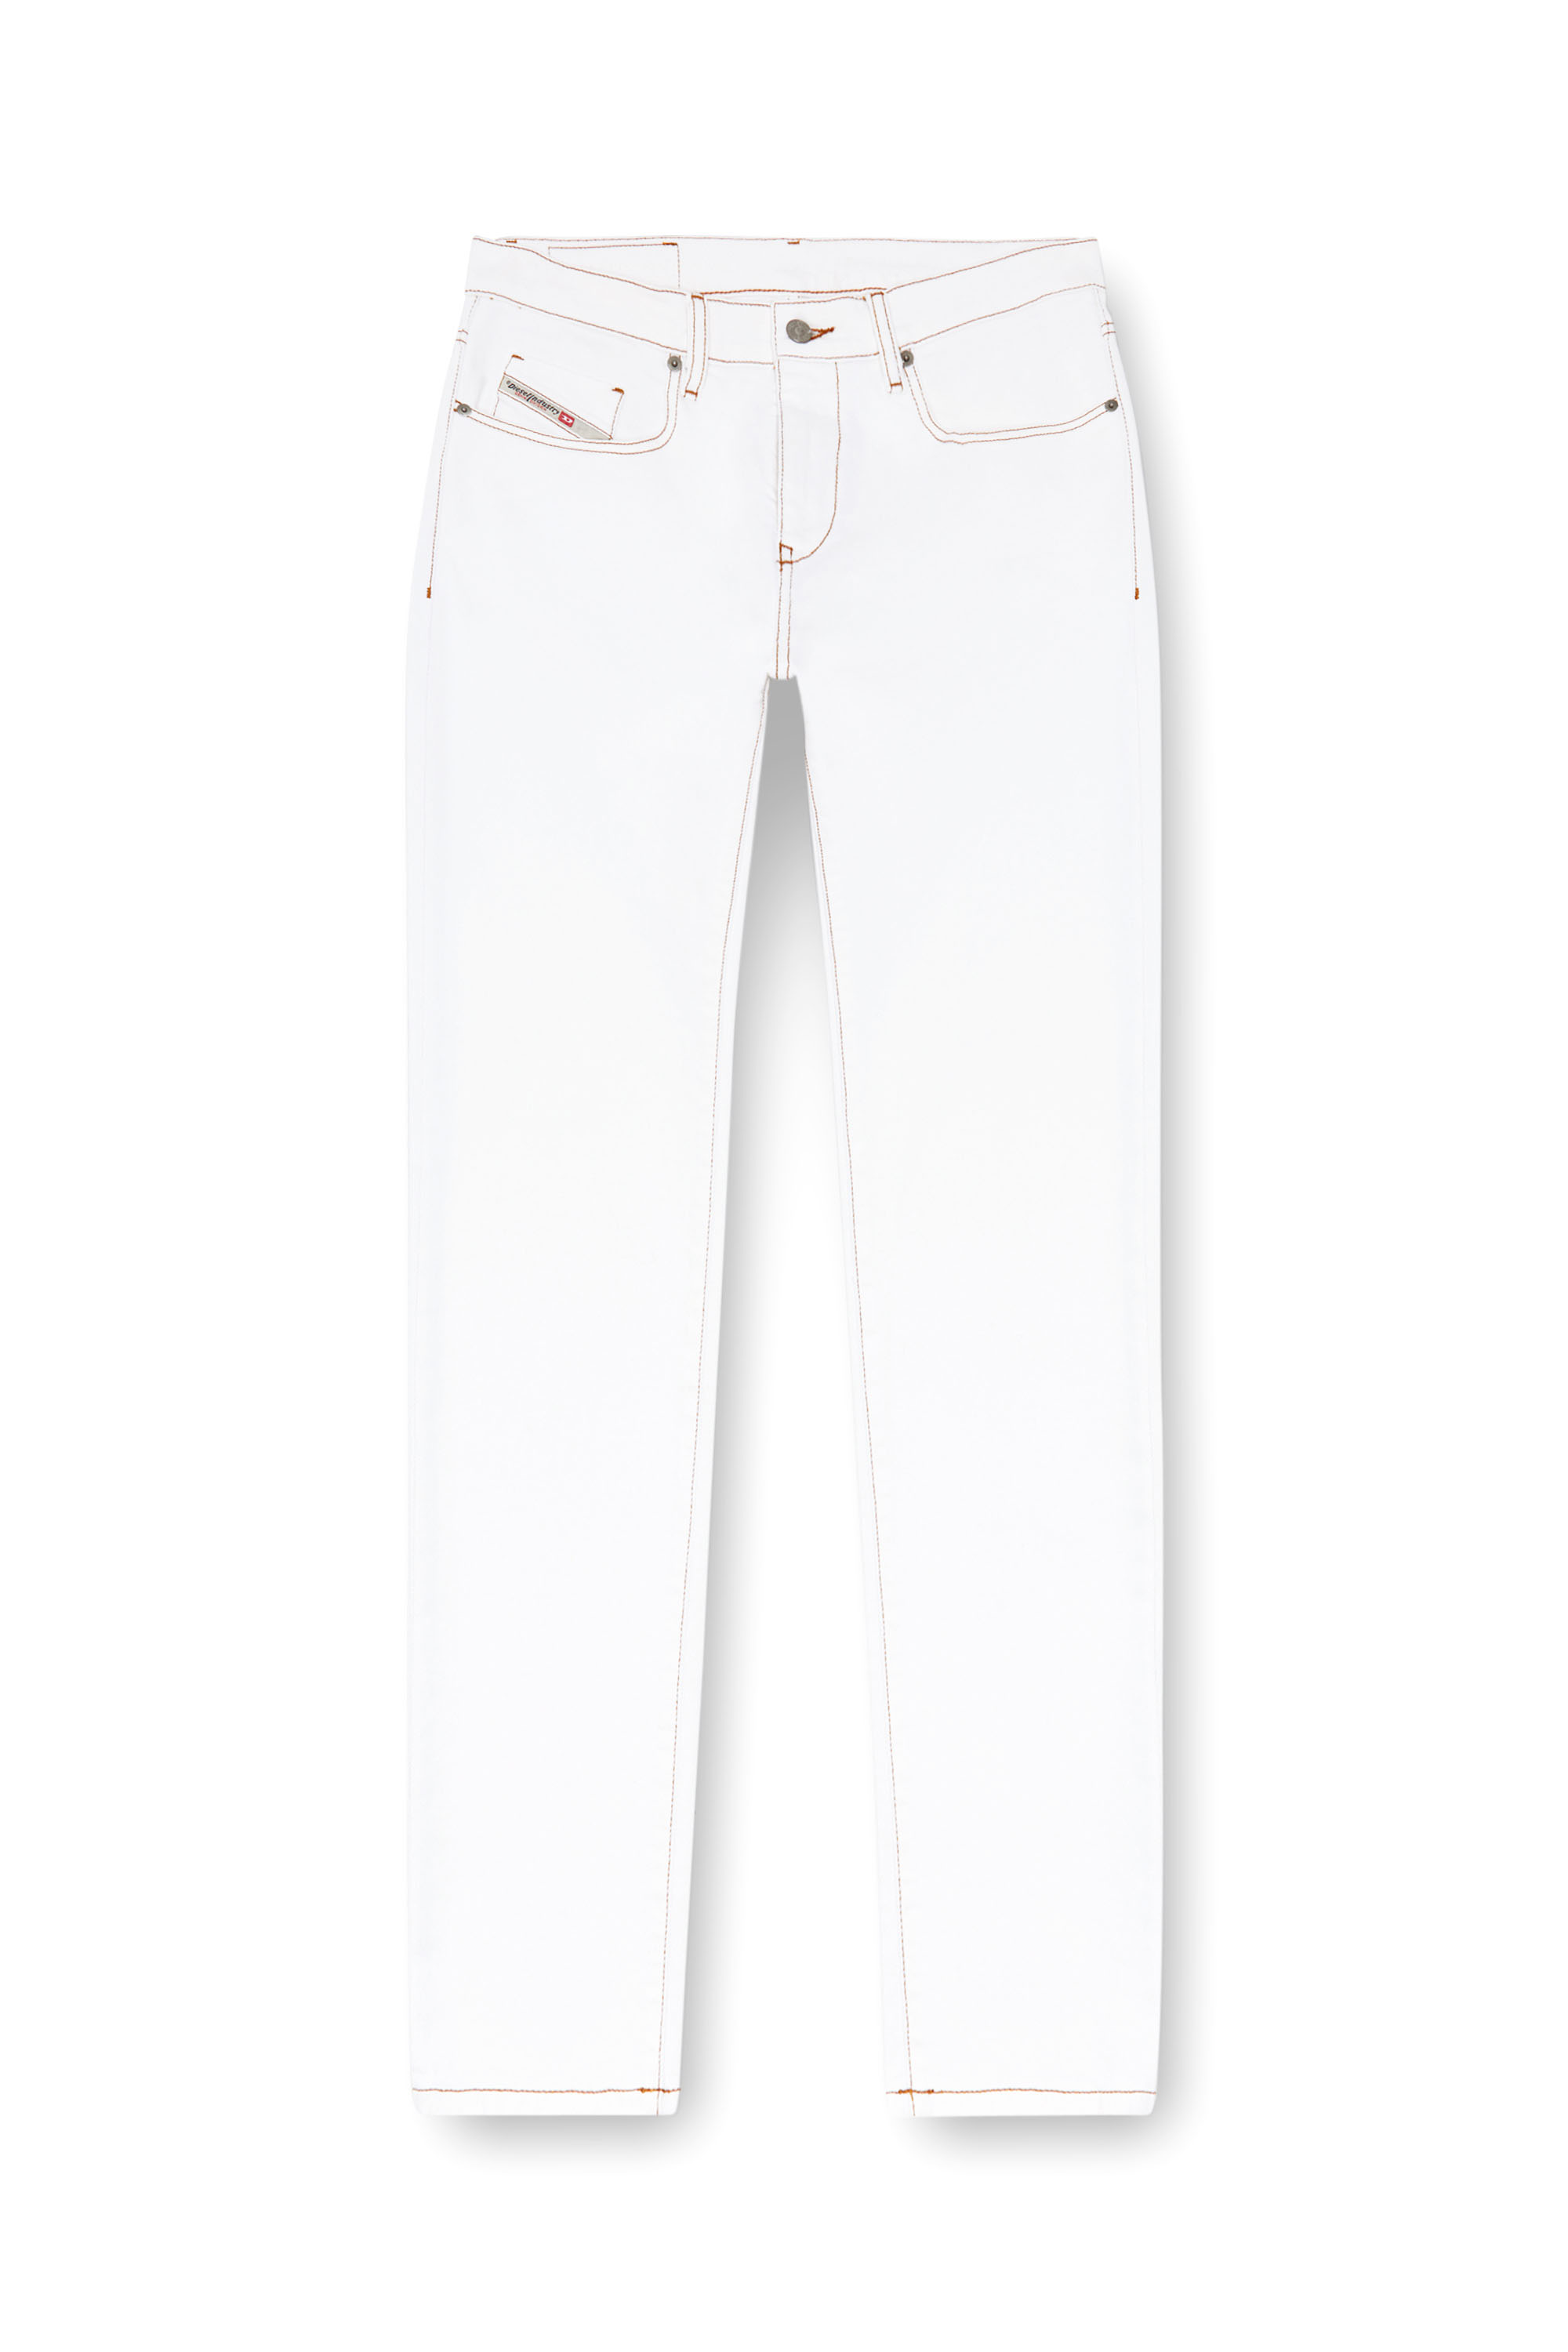 Diesel - Slim Jeans 2019 D-Strukt 09K05, Hombre Slim Jeans - 2019 D-Strukt in Blanco - Image 3